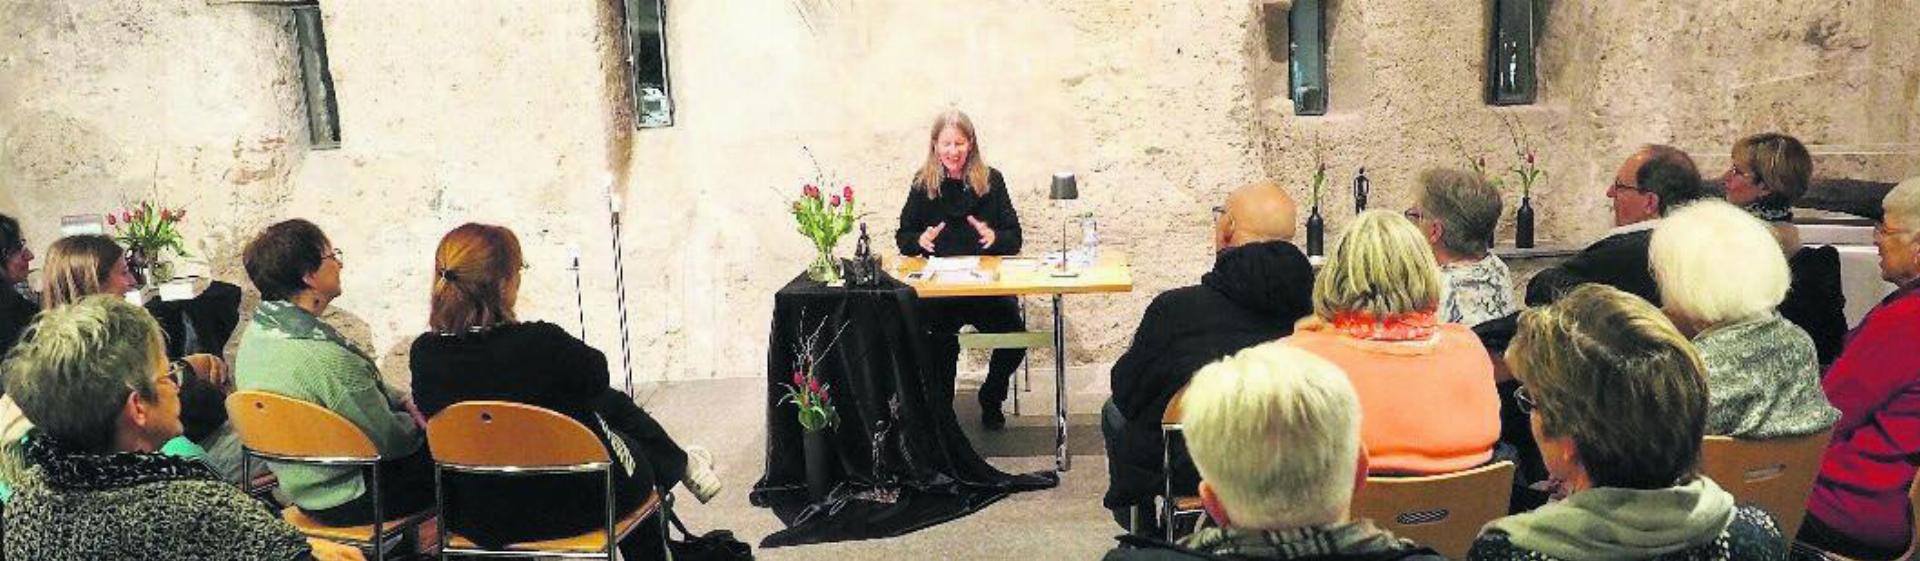 Von den Bibliotheken Mellingen und Niederwil organisiert: Petra Ivanov liest im voll besetzten Saal. Bild: zg